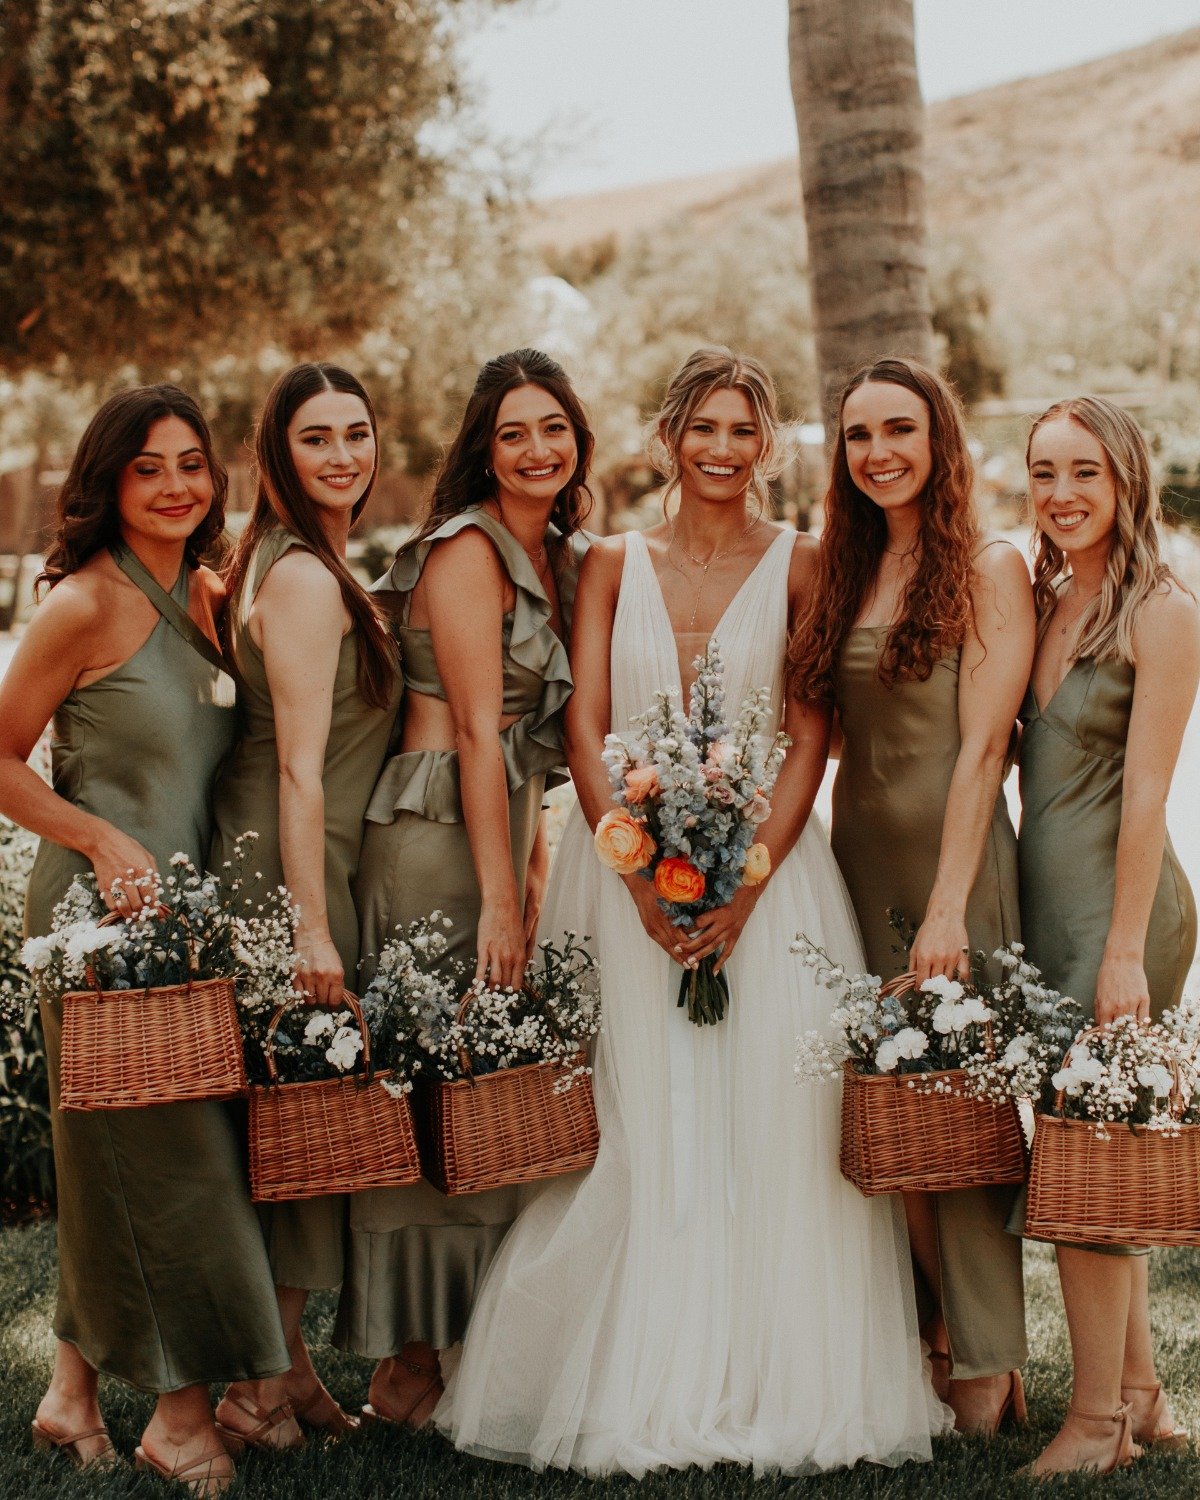 DIY bride and bridesmaid bouquets 